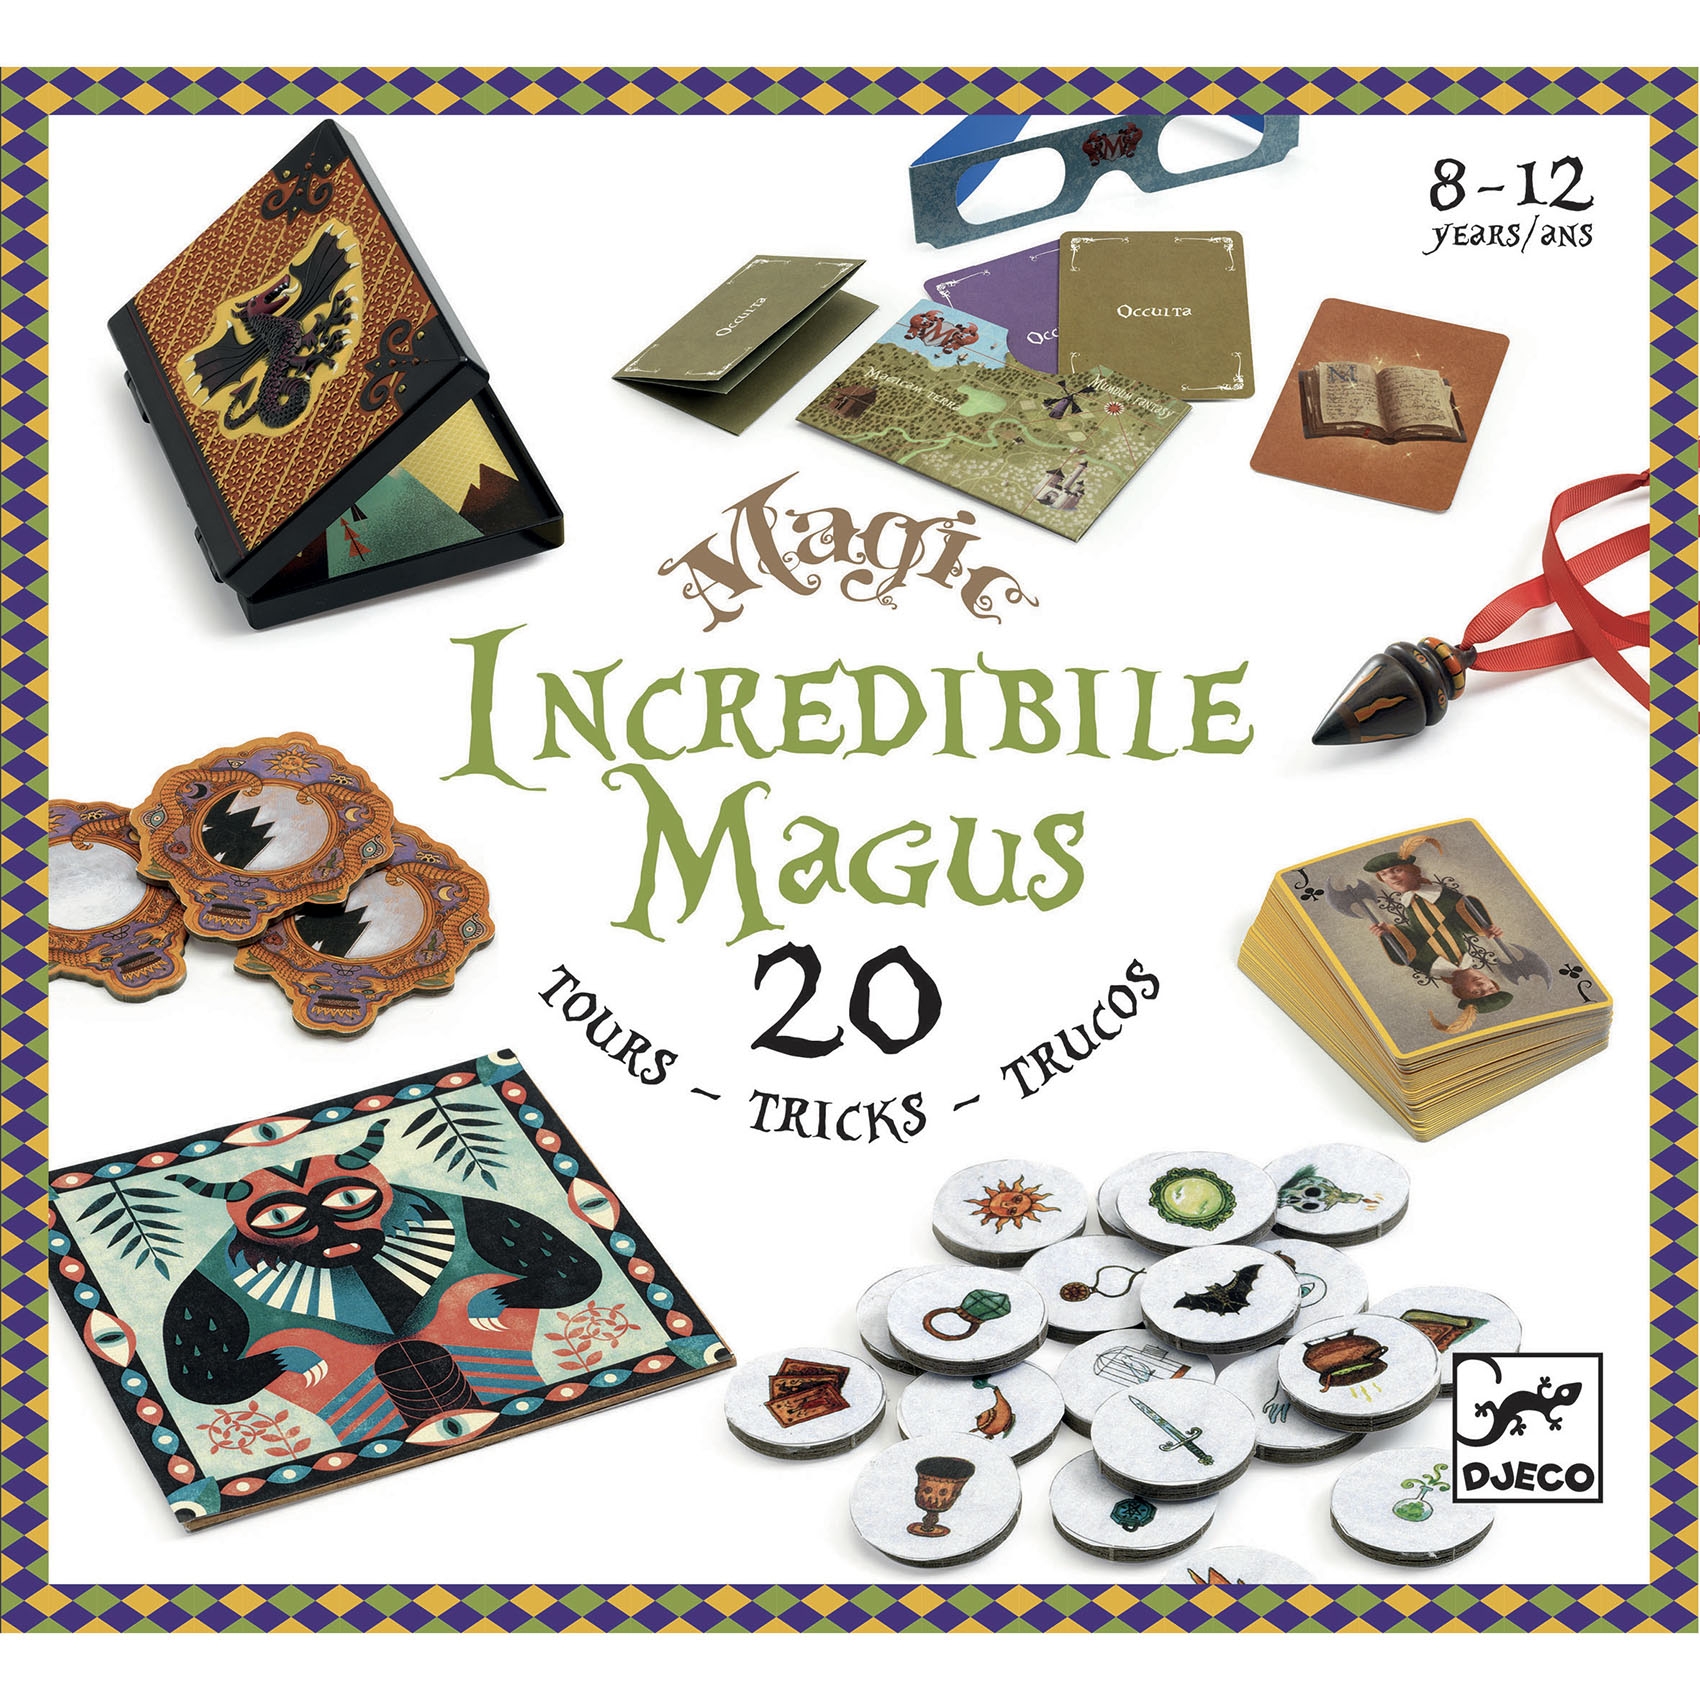 Bűvészkészlet - Hihetetlen varázsló - Incredibile Magus - 20 trükk - 0